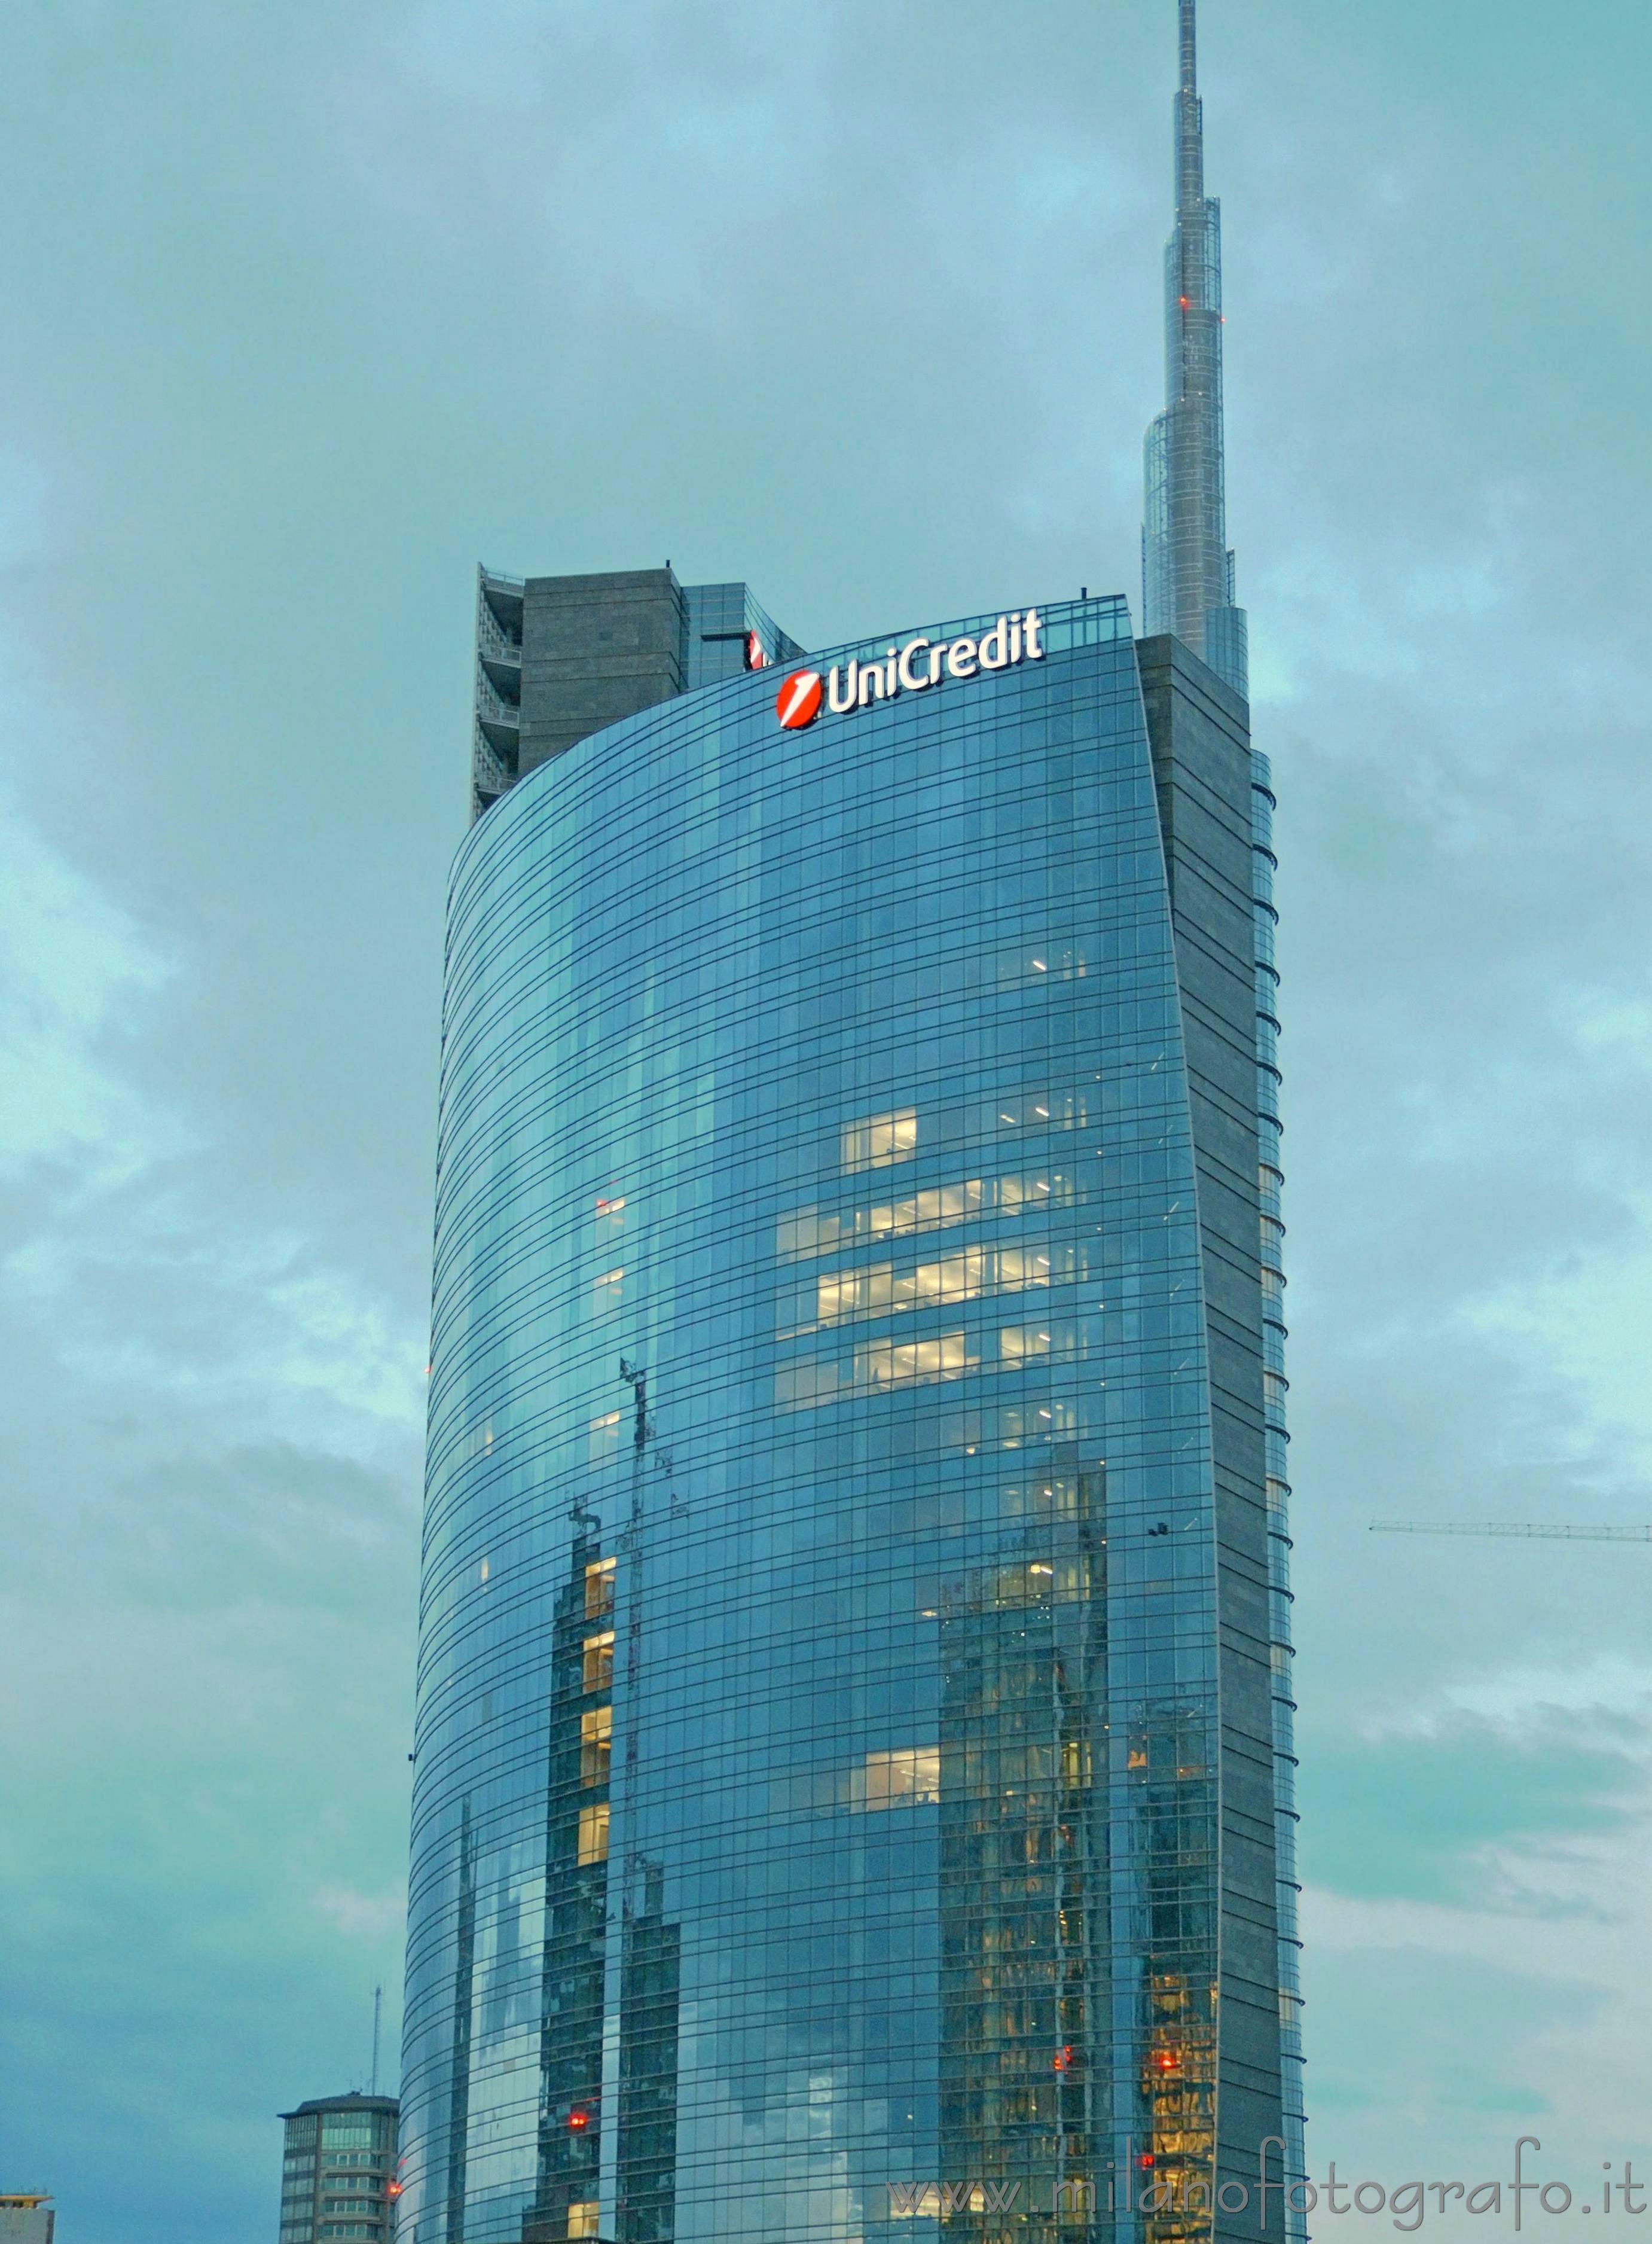 Milano: Il cielo nuvoloso riflesso sulla torre Unicredit - Milano